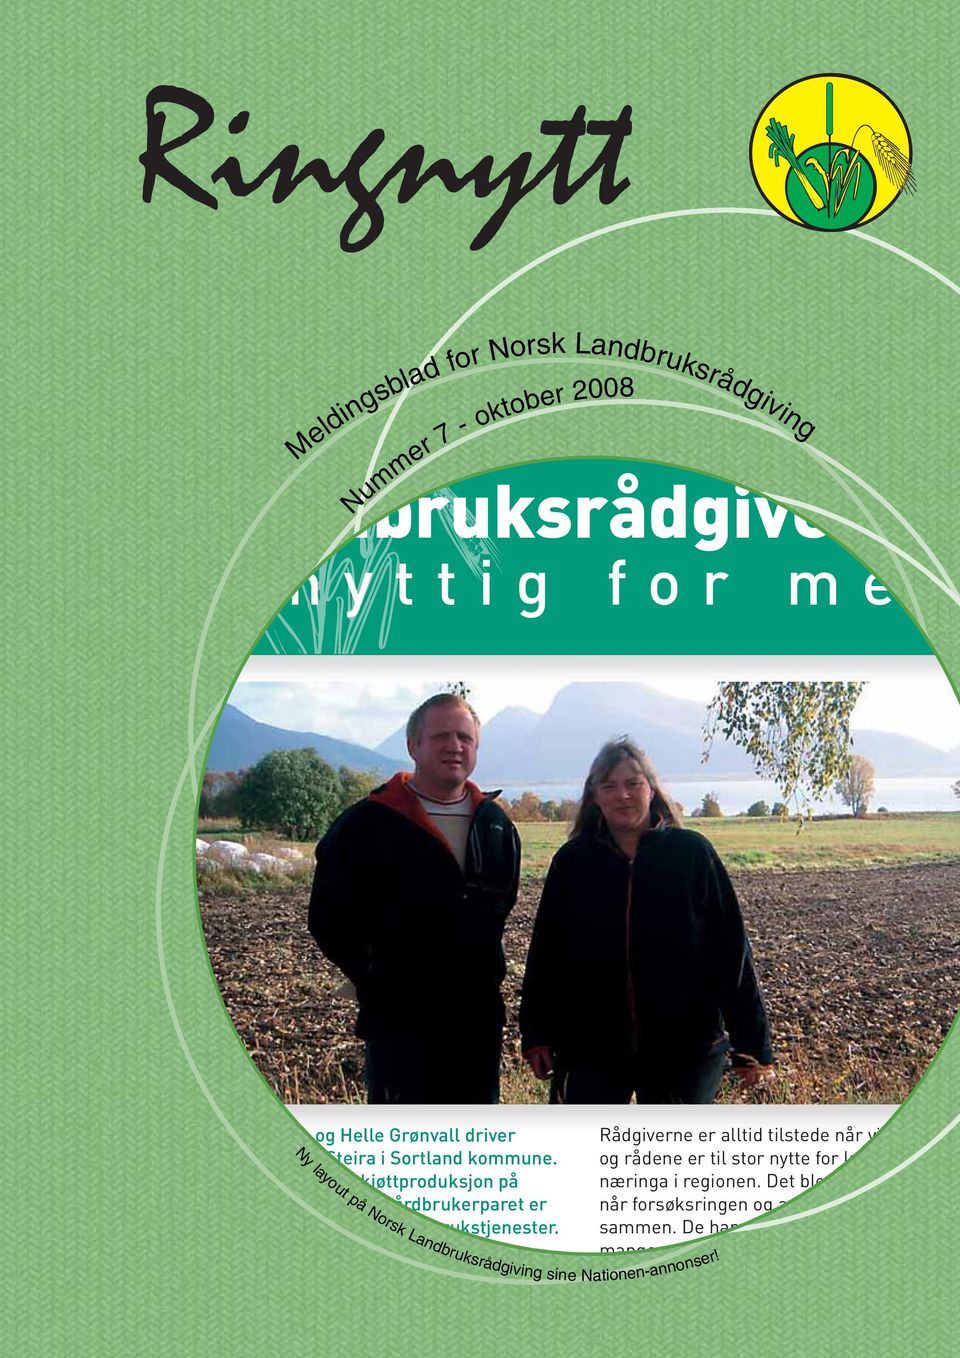 Ny layout på Norsk Landbruksrådgiving Rådgiverne er alltid tilstede når vi tar konta og rådene er til stor nytte for landbruksnæringa i regionen.